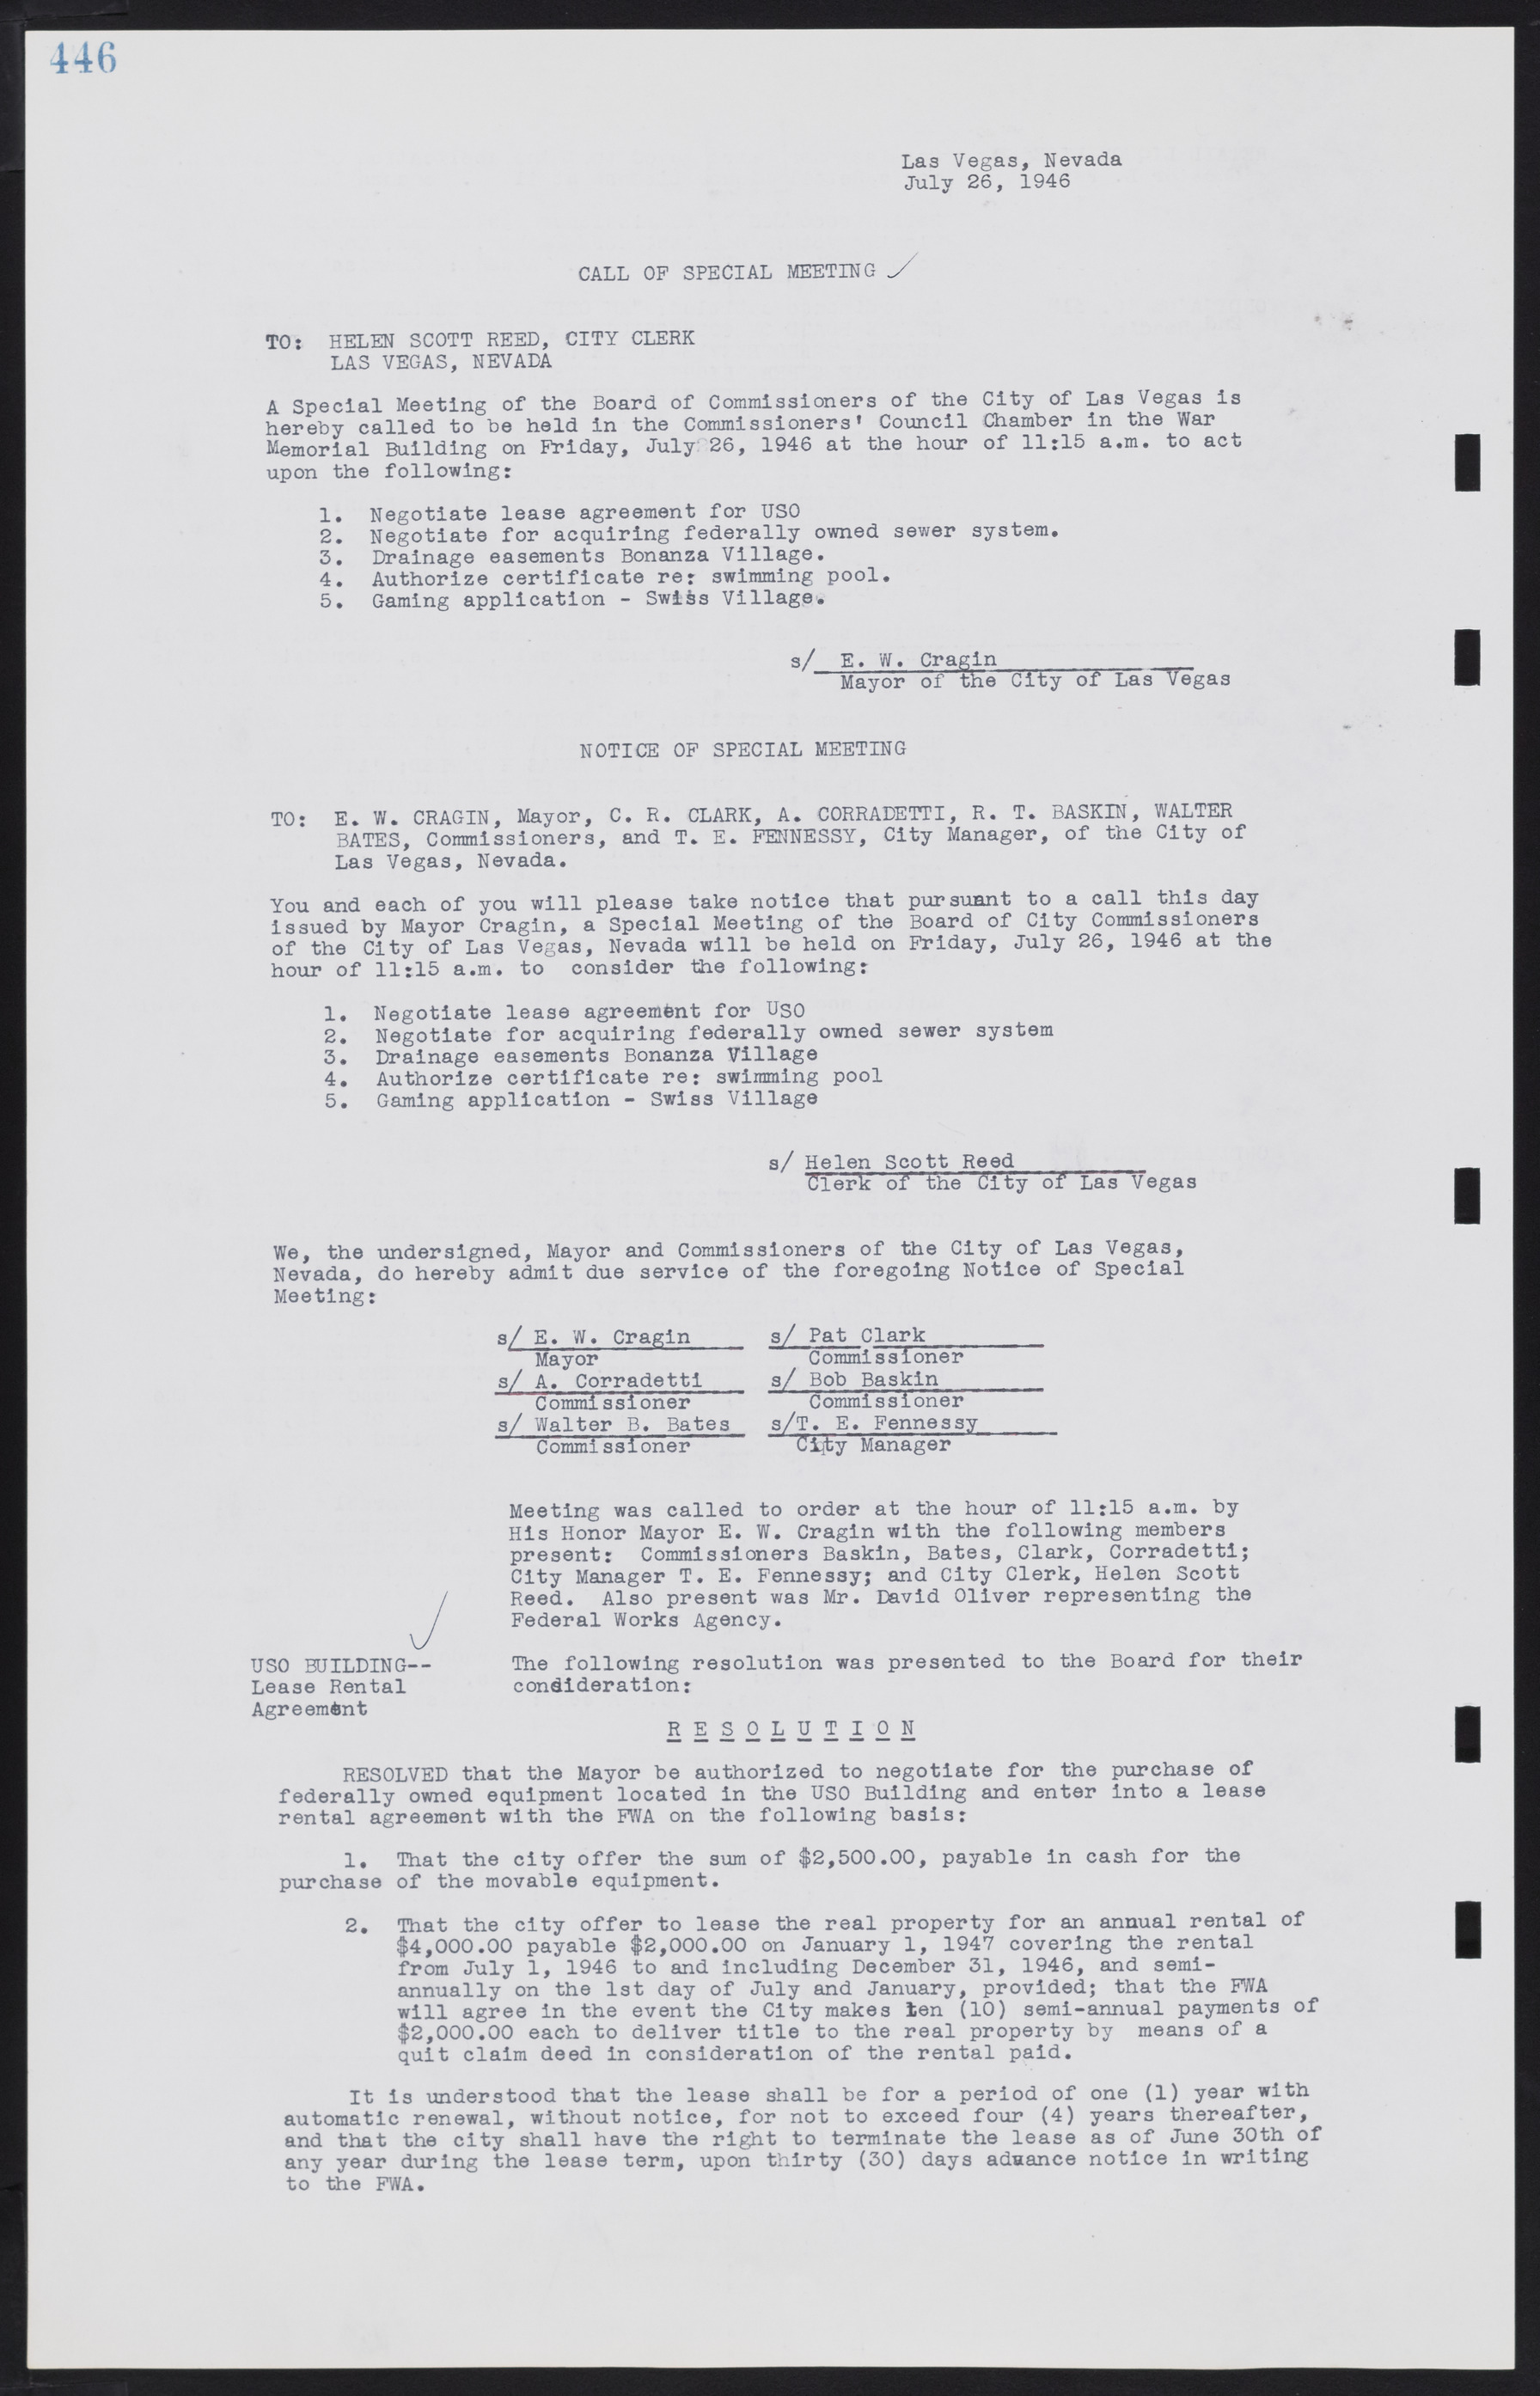 Las Vegas City Commission Minutes, August 11, 1942 to December 30, 1946, lvc000005-477